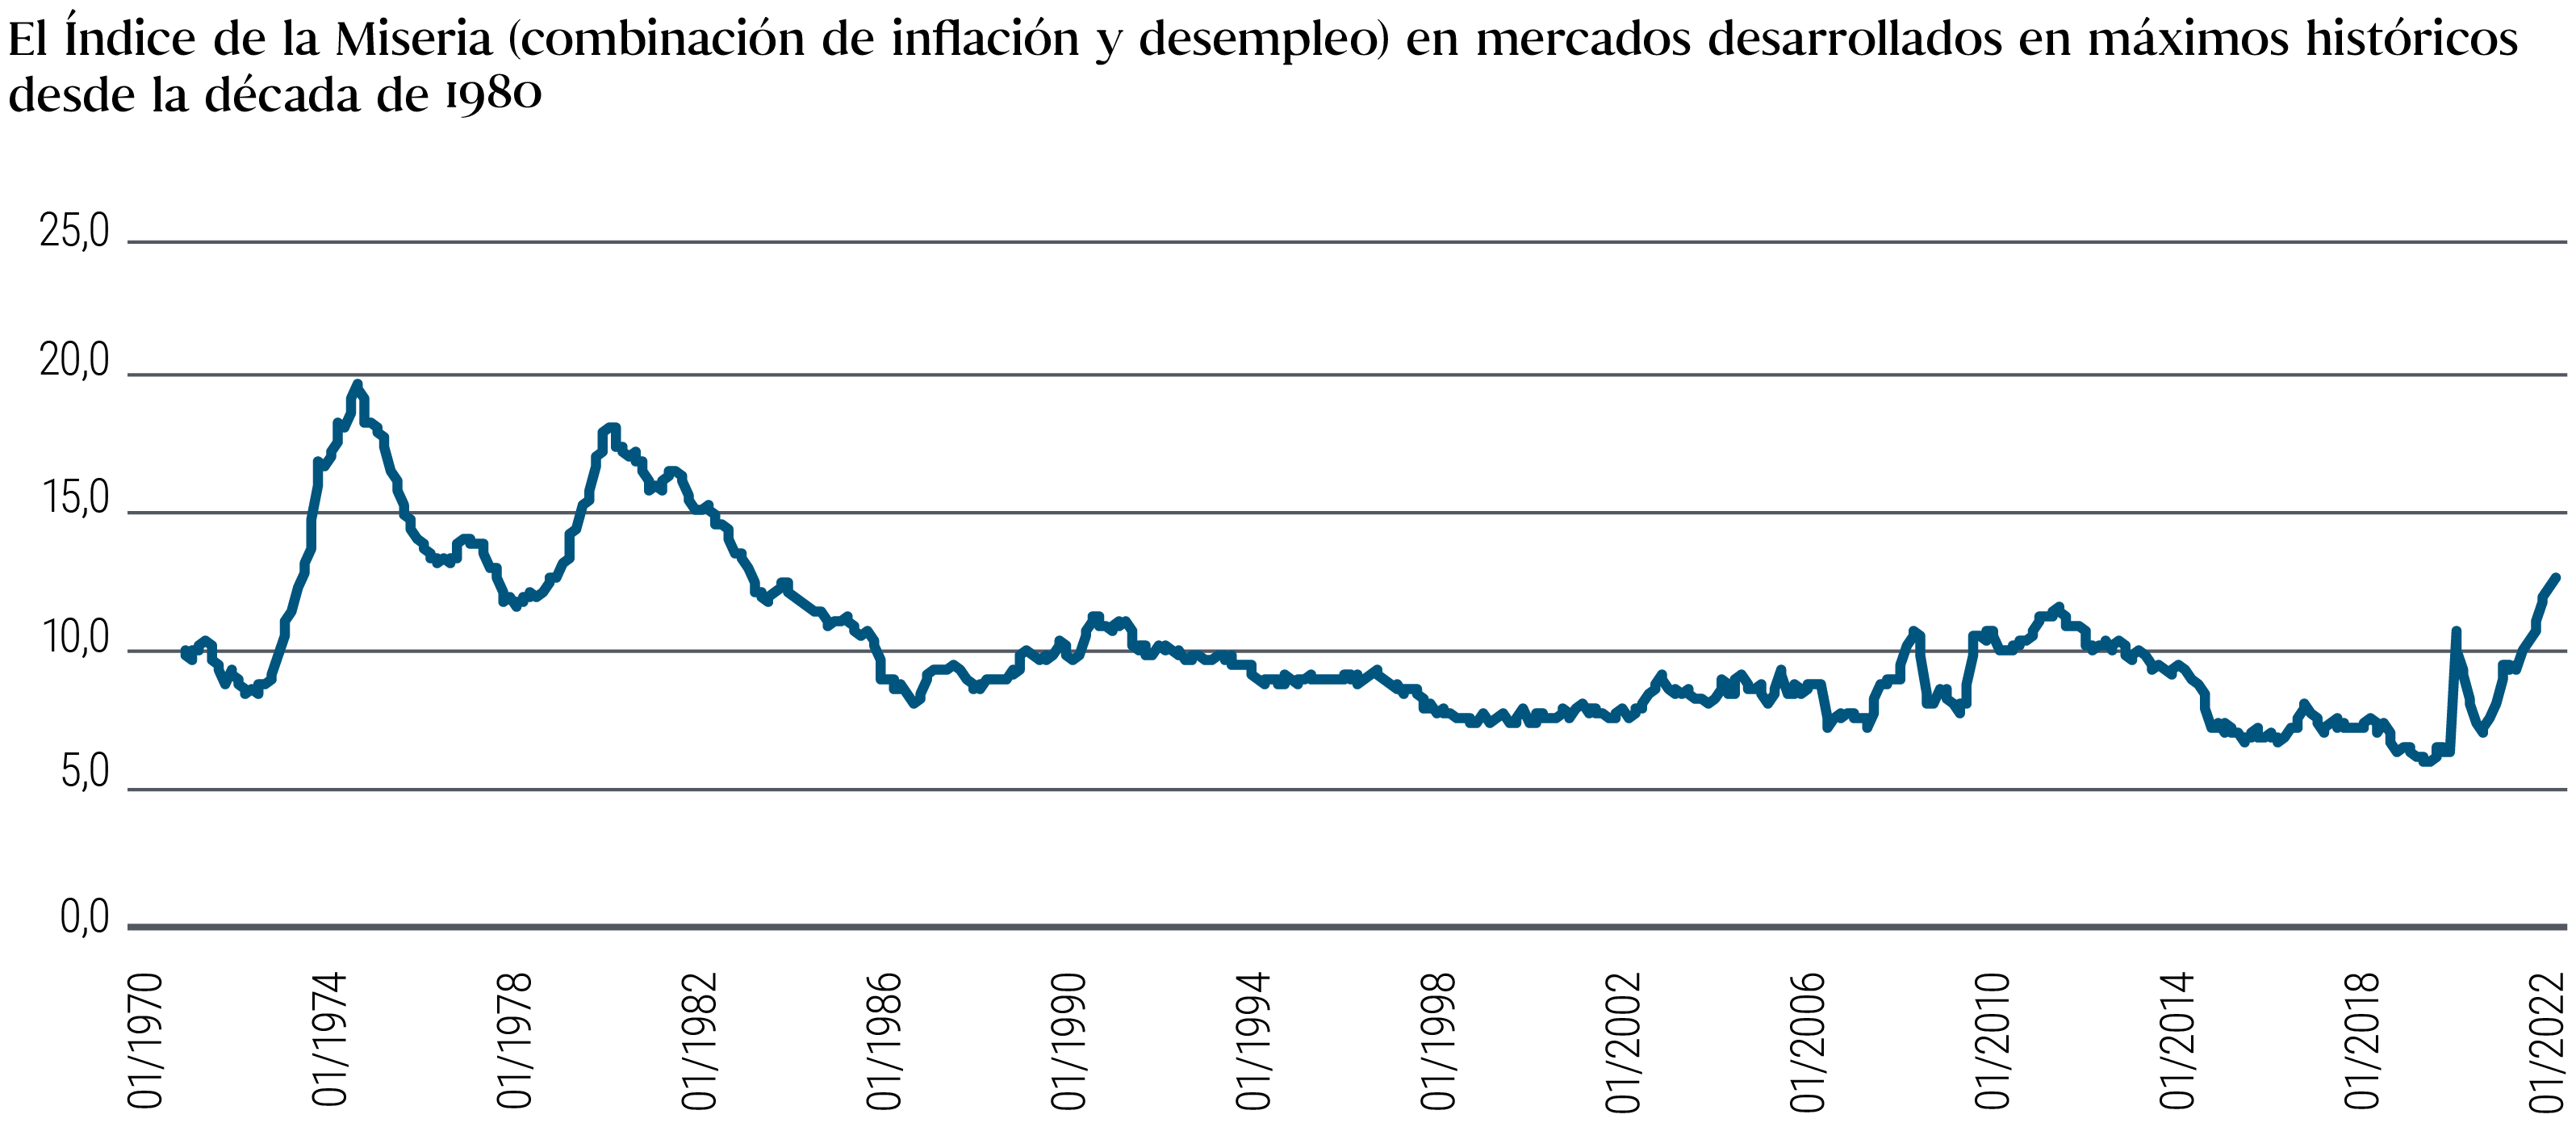 El gráfico de líneas del índice de miseria muestra la suma de la inflación y el desempleo (ambos parámetros medidos individualmente en forma de porcentaje) de cinco economías desarrolladas desde enero de 1970 hasta septiembre de 2022. Dos puntos máximos destacados, 20 en 1975 y 18 en 1982, indican períodos de gran miseria económica. Desde principios de la década de 1980, se observa una trayectoria bajista en general, que toca suelo en noviembre de 2019 (nivel de 6). A continuación, tiende bruscamente al alza, con un repunte alrededor del estallido de la pandemia de la COVID-19, seguido de un breve descenso y, con posterioridad, un nuevo aumento pronunciado. El índice de miseria rozó la cota de 13 en el tercer trimestre de 2022. 